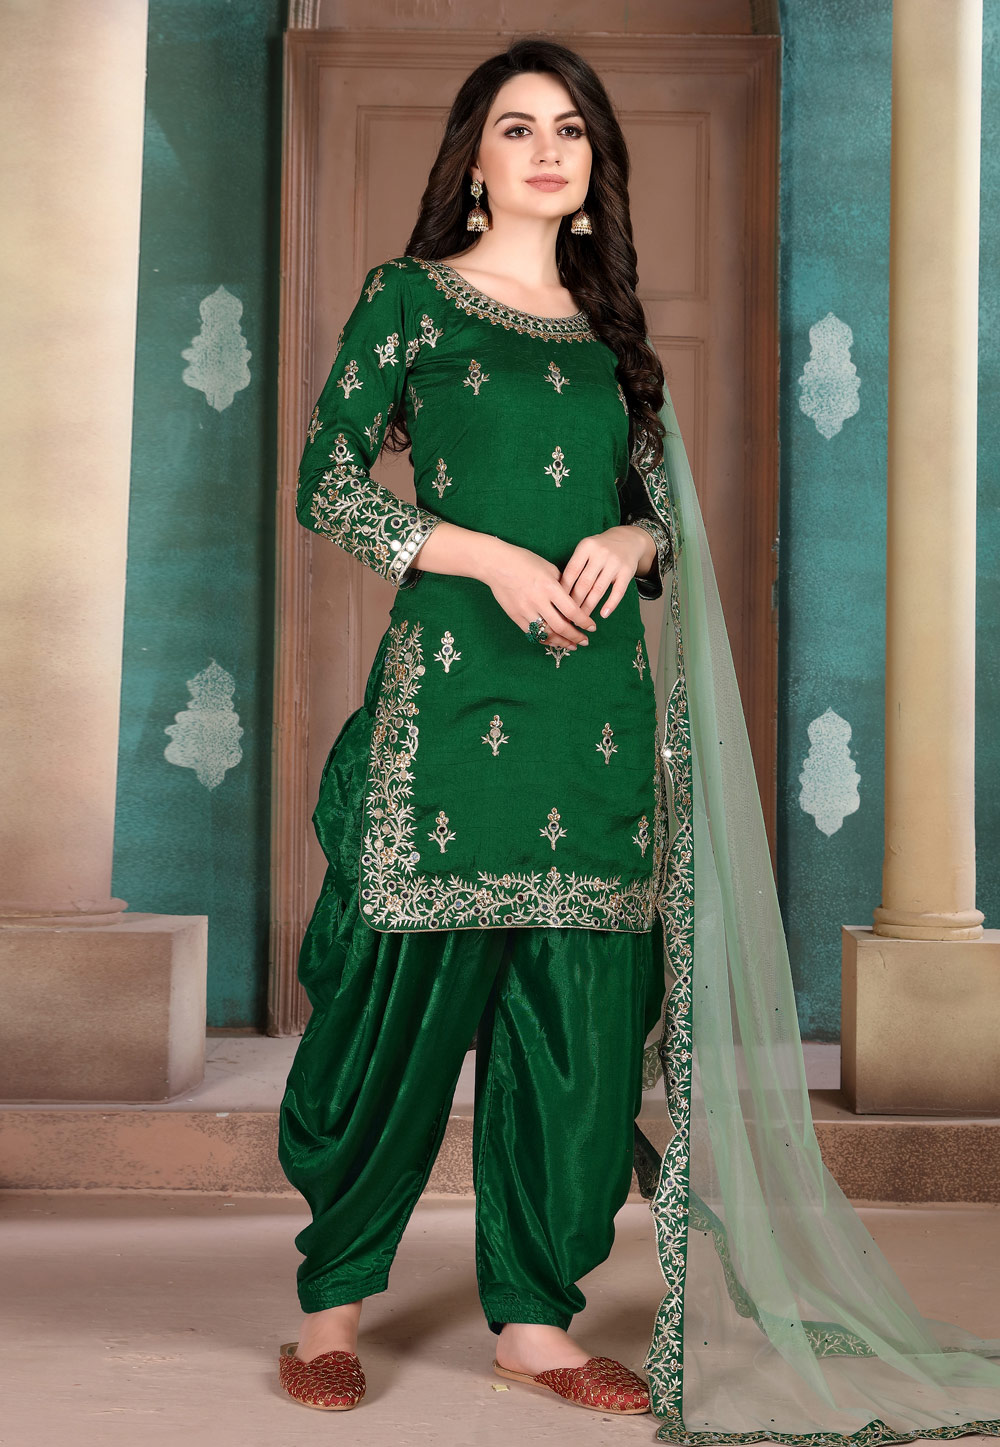 Pista Green Sharara Suit Dress Plazzo Indian Ethnic sequins Work Salwar  Kameez | eBay